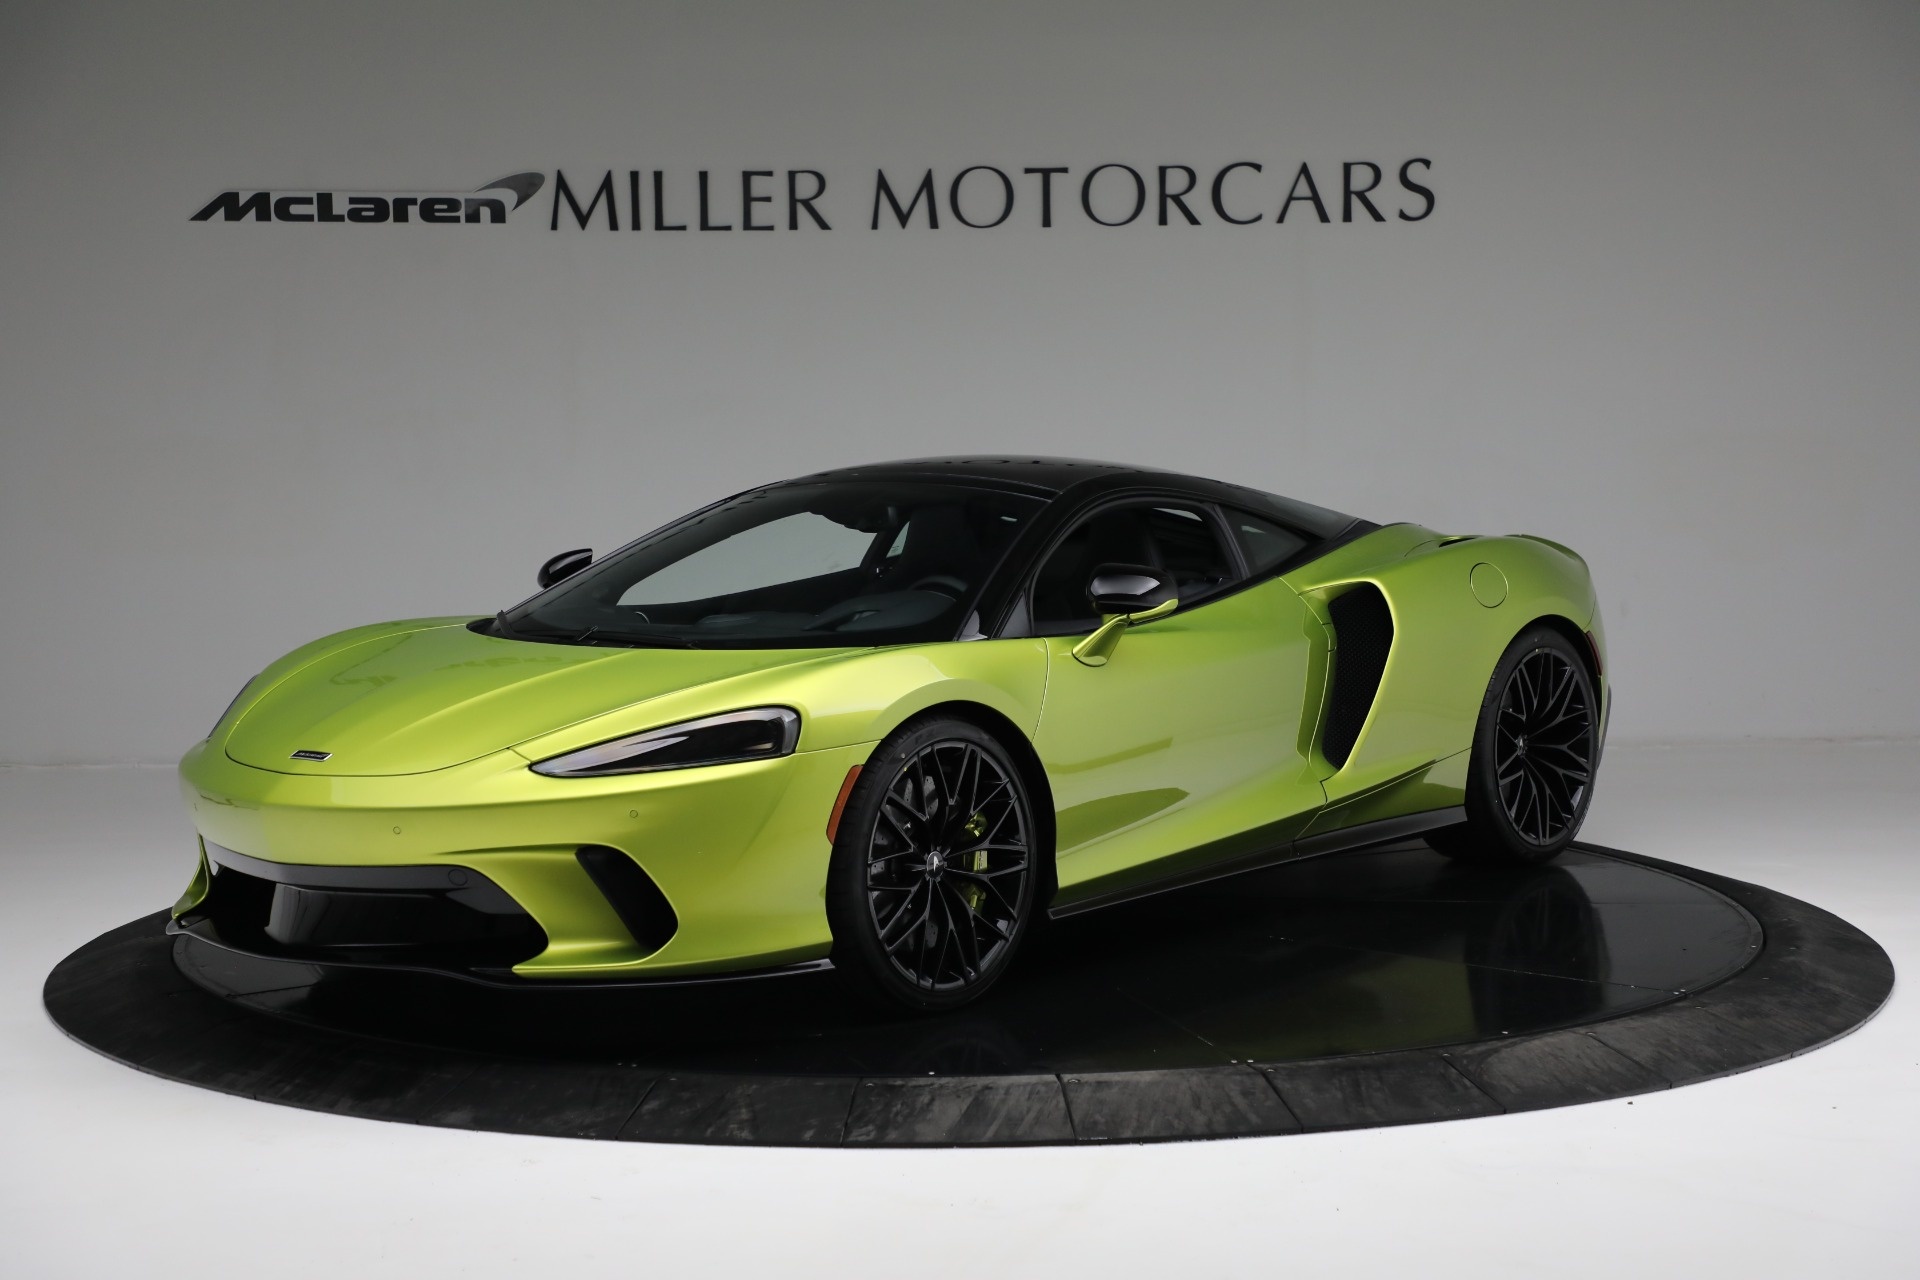 McLaren GT, New 2022 model, Miller Motorcars stock, Exclusive ownership opportunity, 1920x1280 HD Desktop